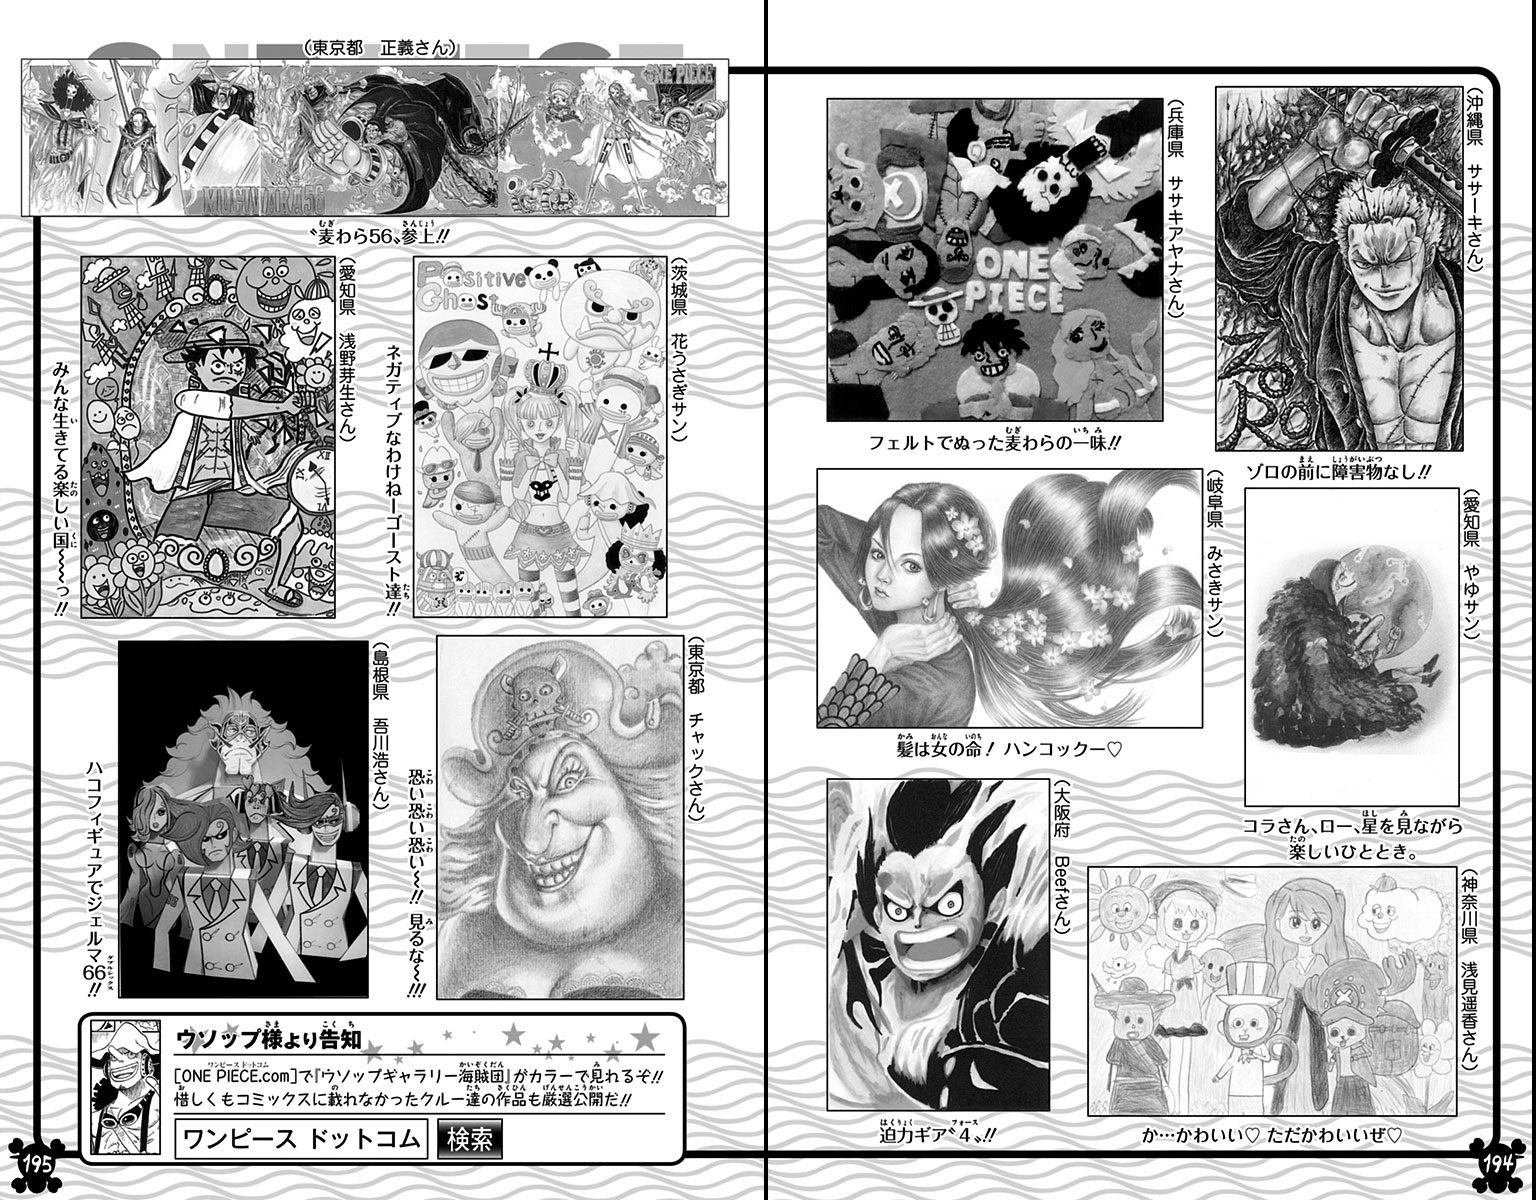 Volume 87 | One Piece Wiki | Fandom